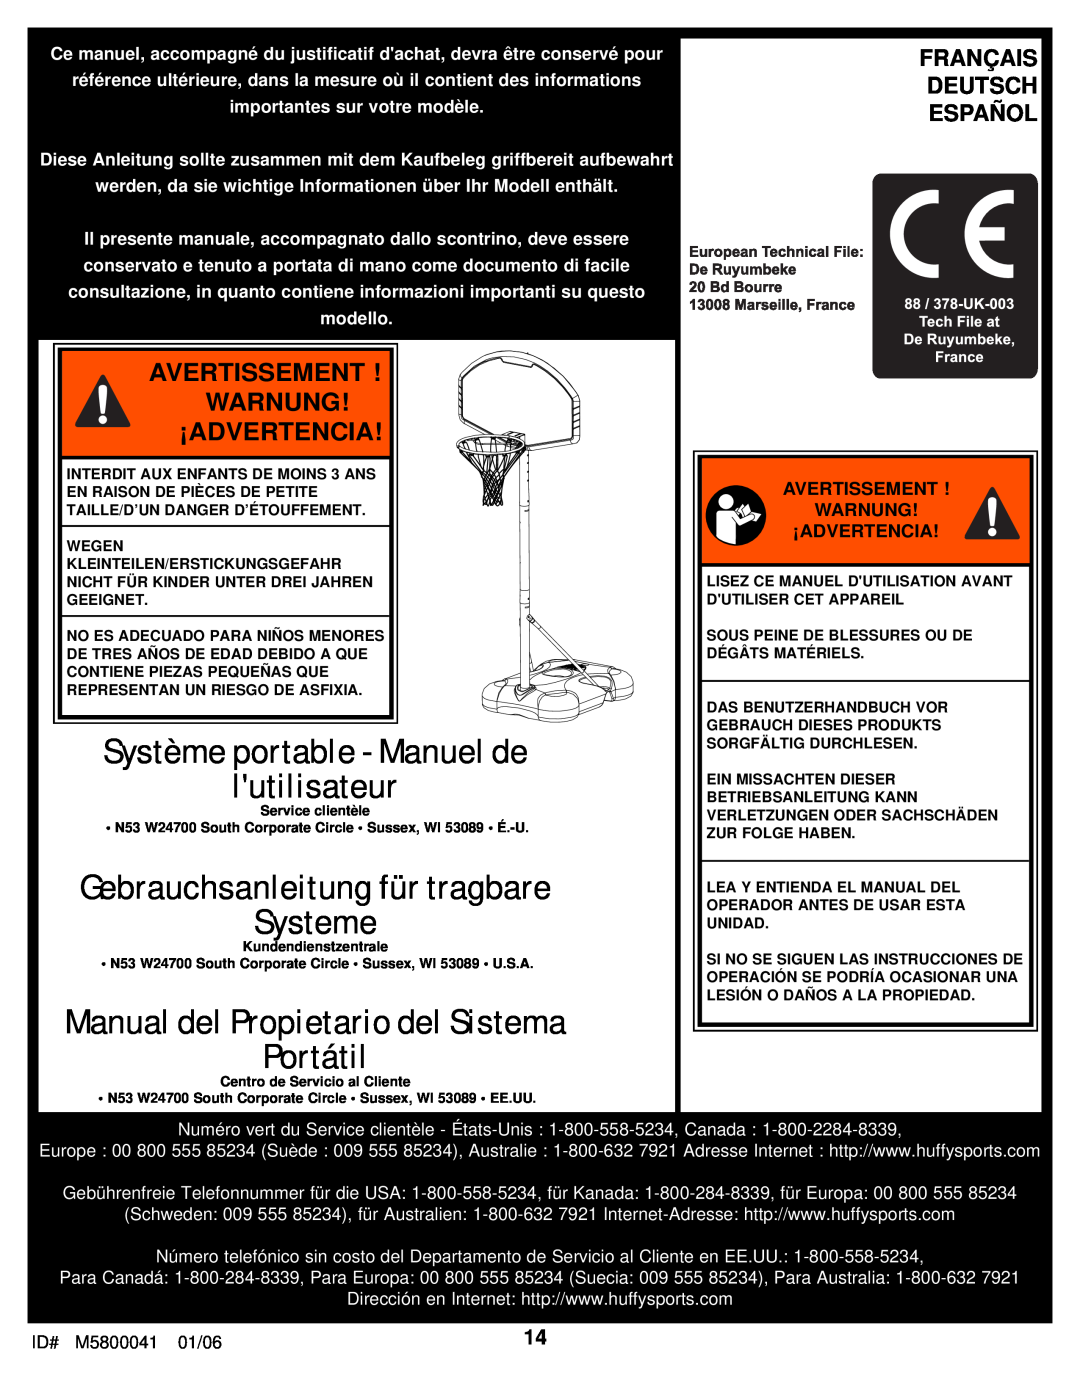 Spalding M5800041 Avertissement Warnung ¡Advertencia, Français Deutsch Español, Système portable - Manuel de lutilisateur 